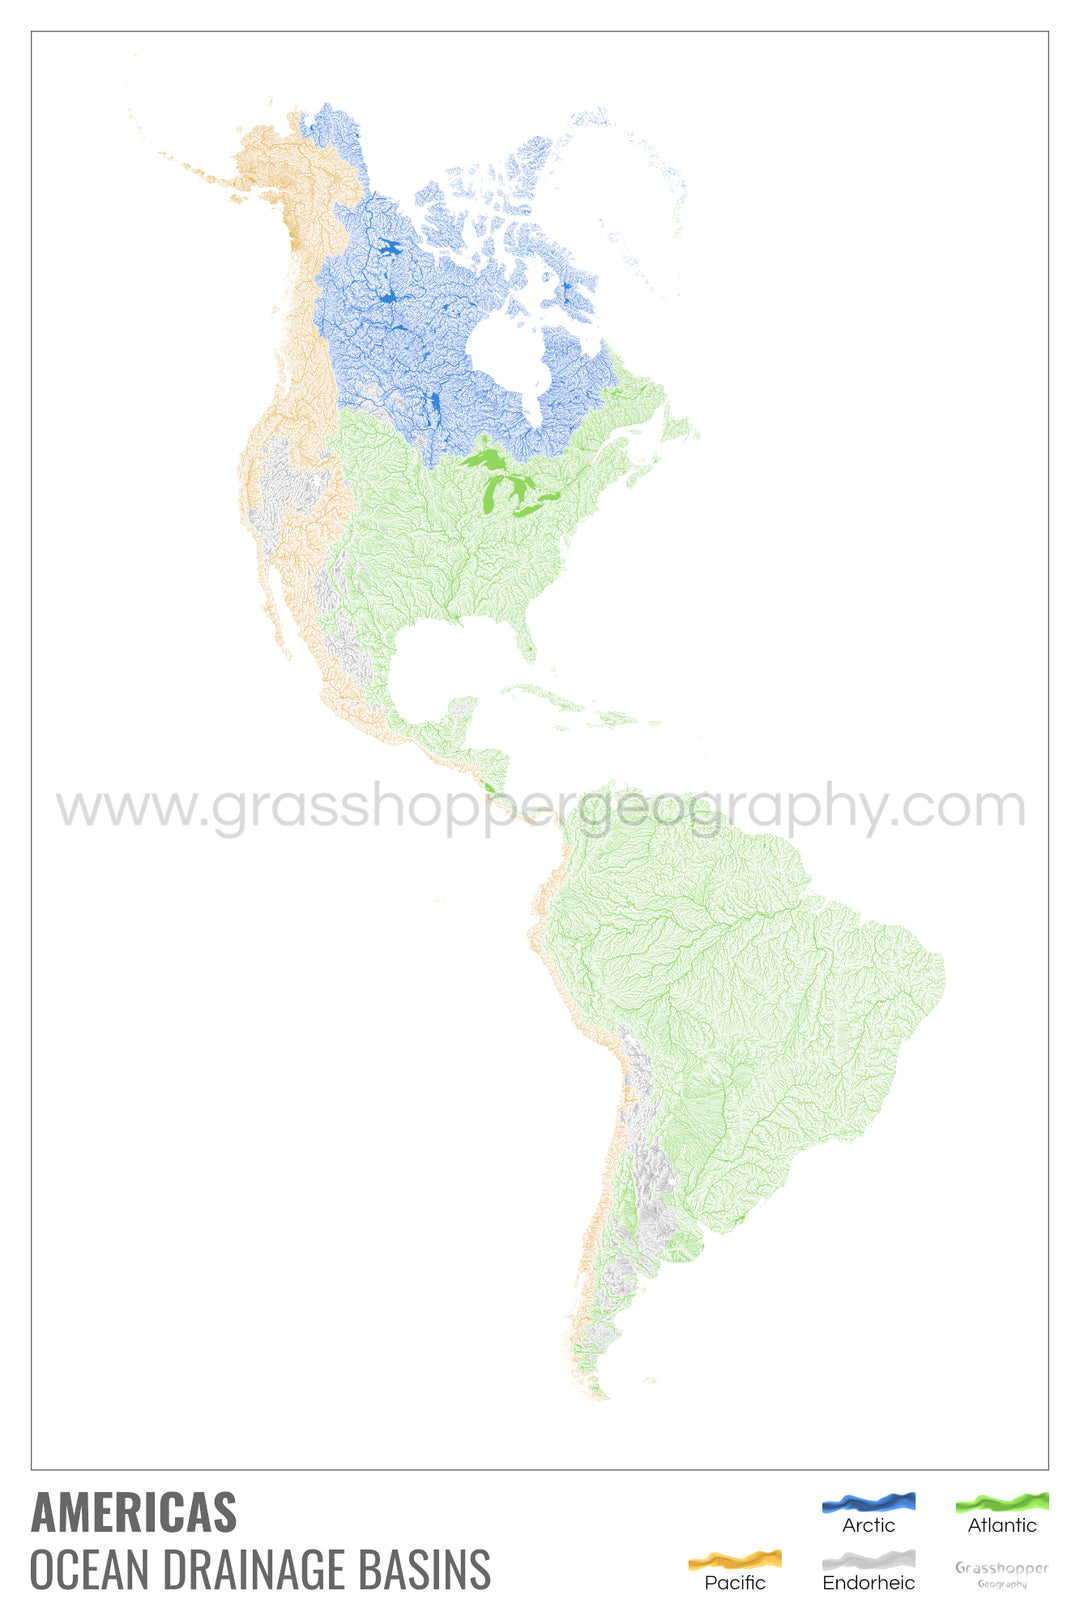 Les Amériques - Carte des bassins versants océaniques, blanche avec légende v1 - Tirage d'art avec cintre